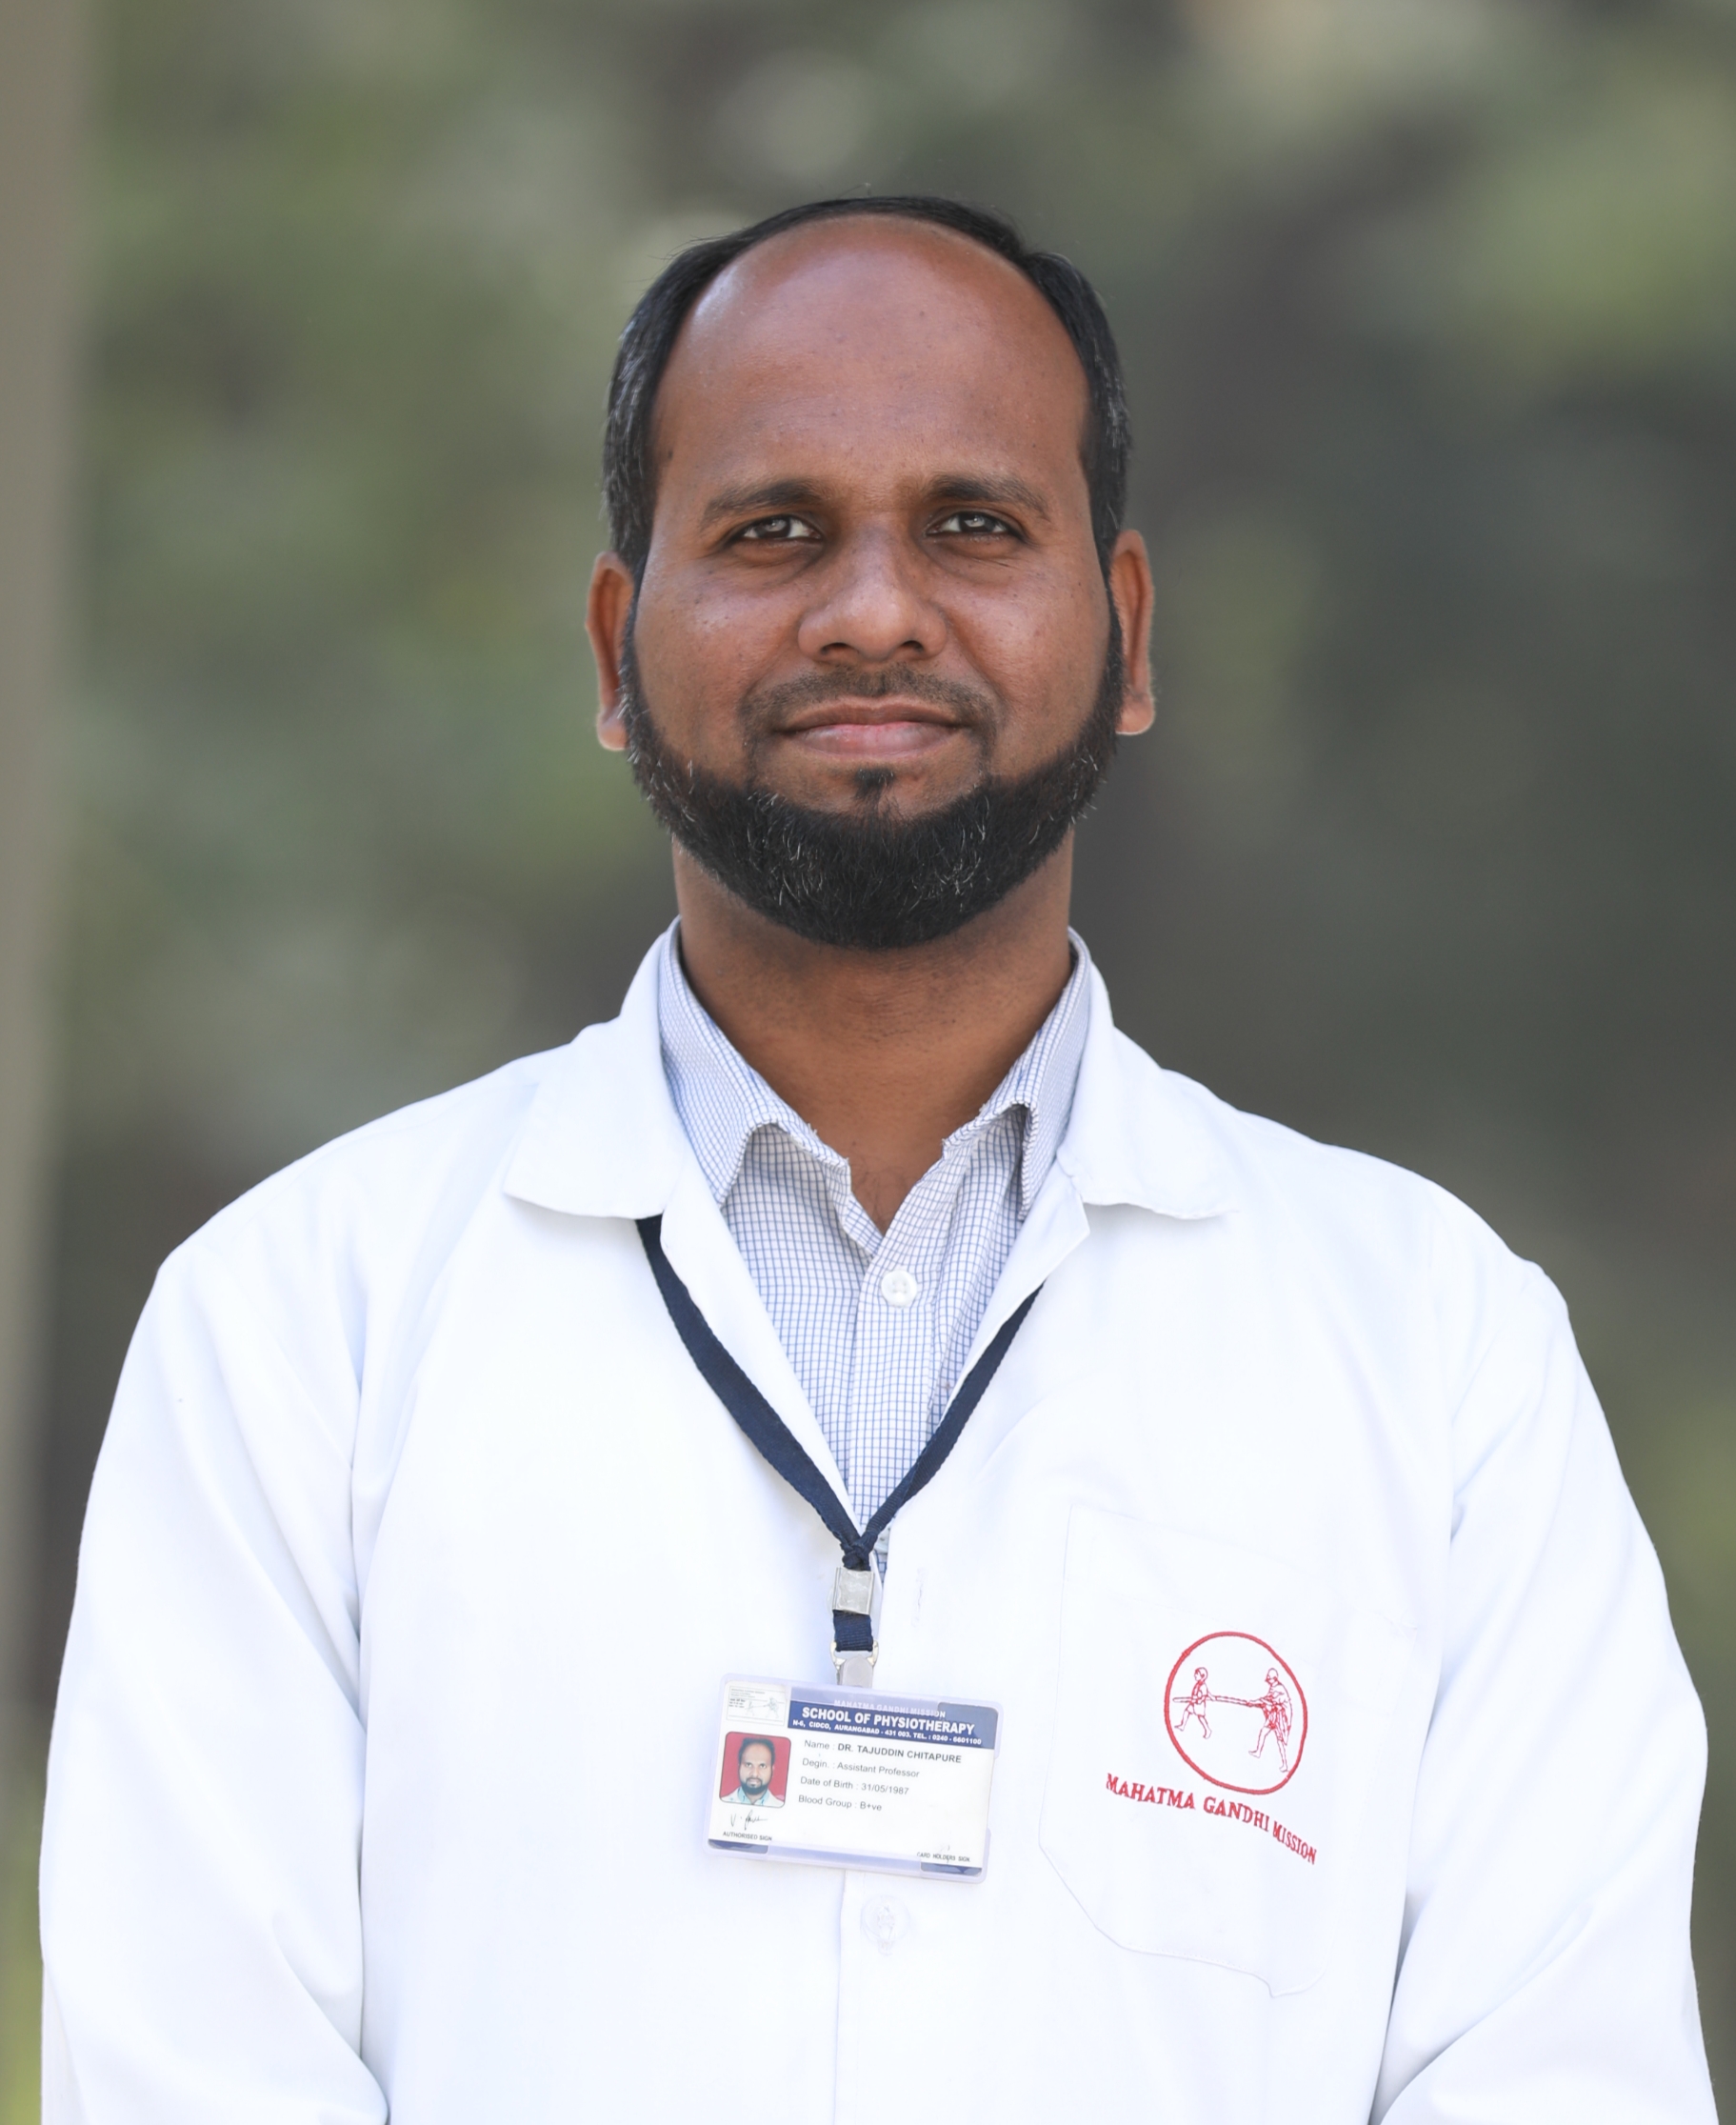 Dr. Tajuddin Chitapure